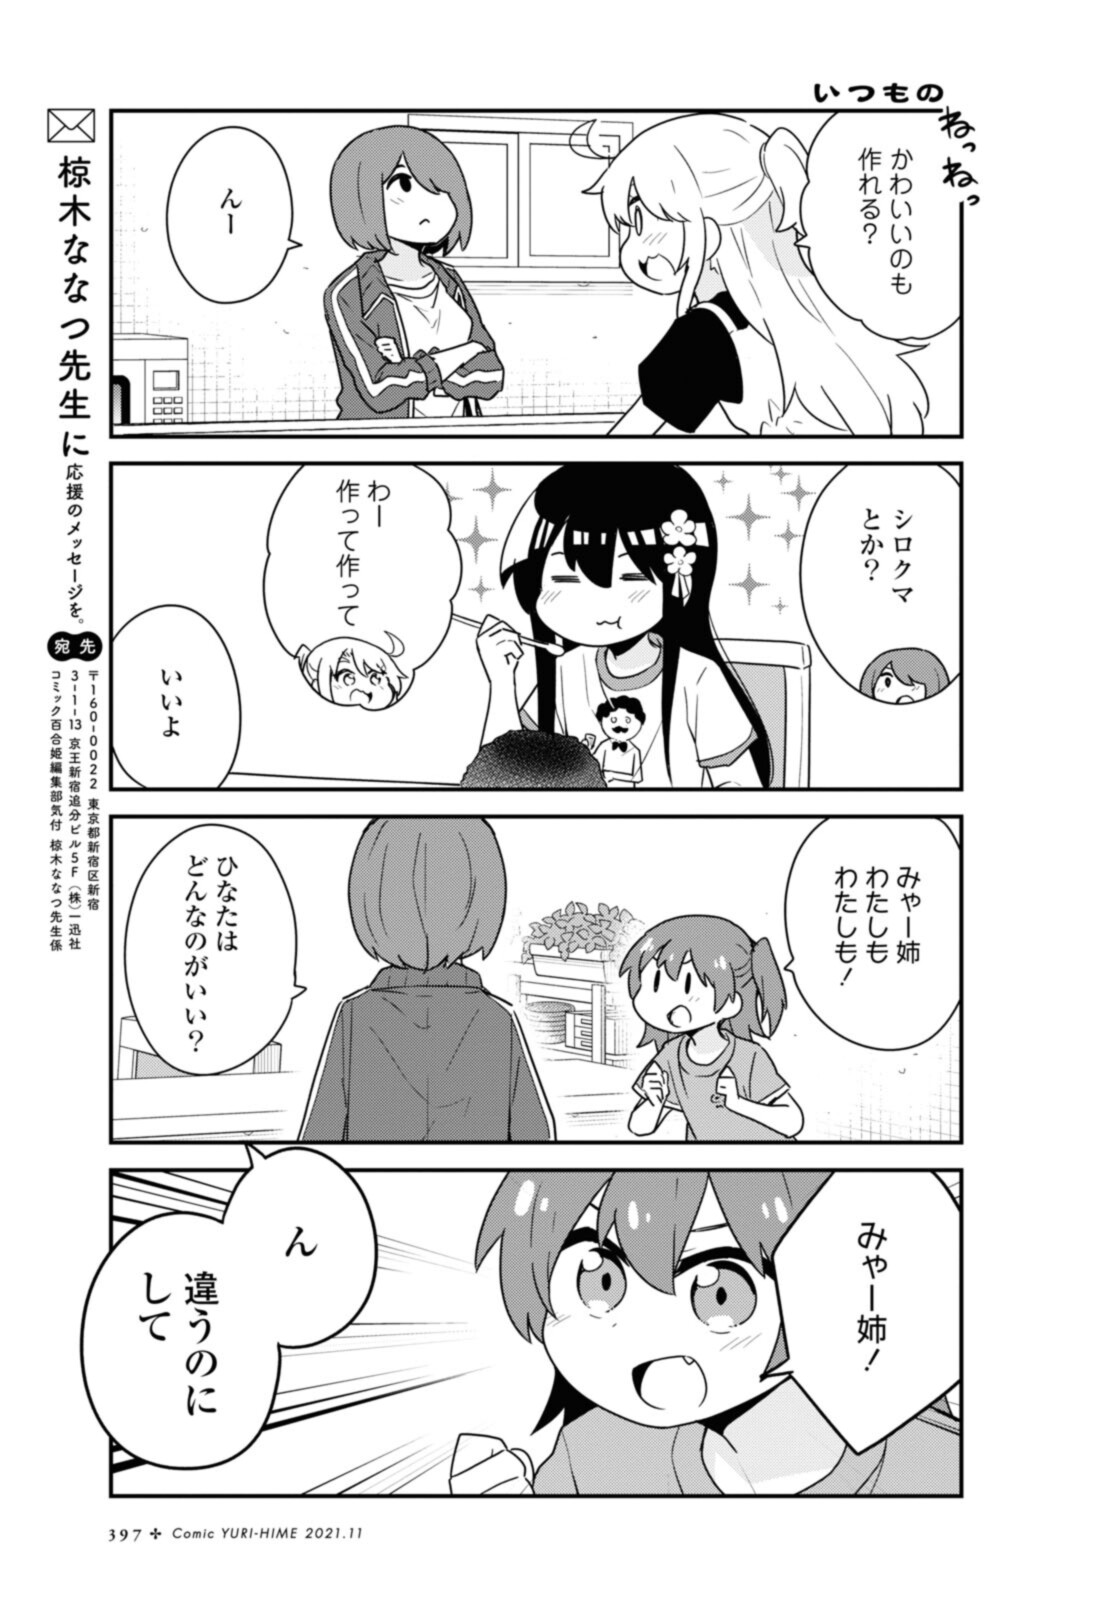 Watashi ni Tenshi ga Maiorita! - Chapter 88 - Page 10